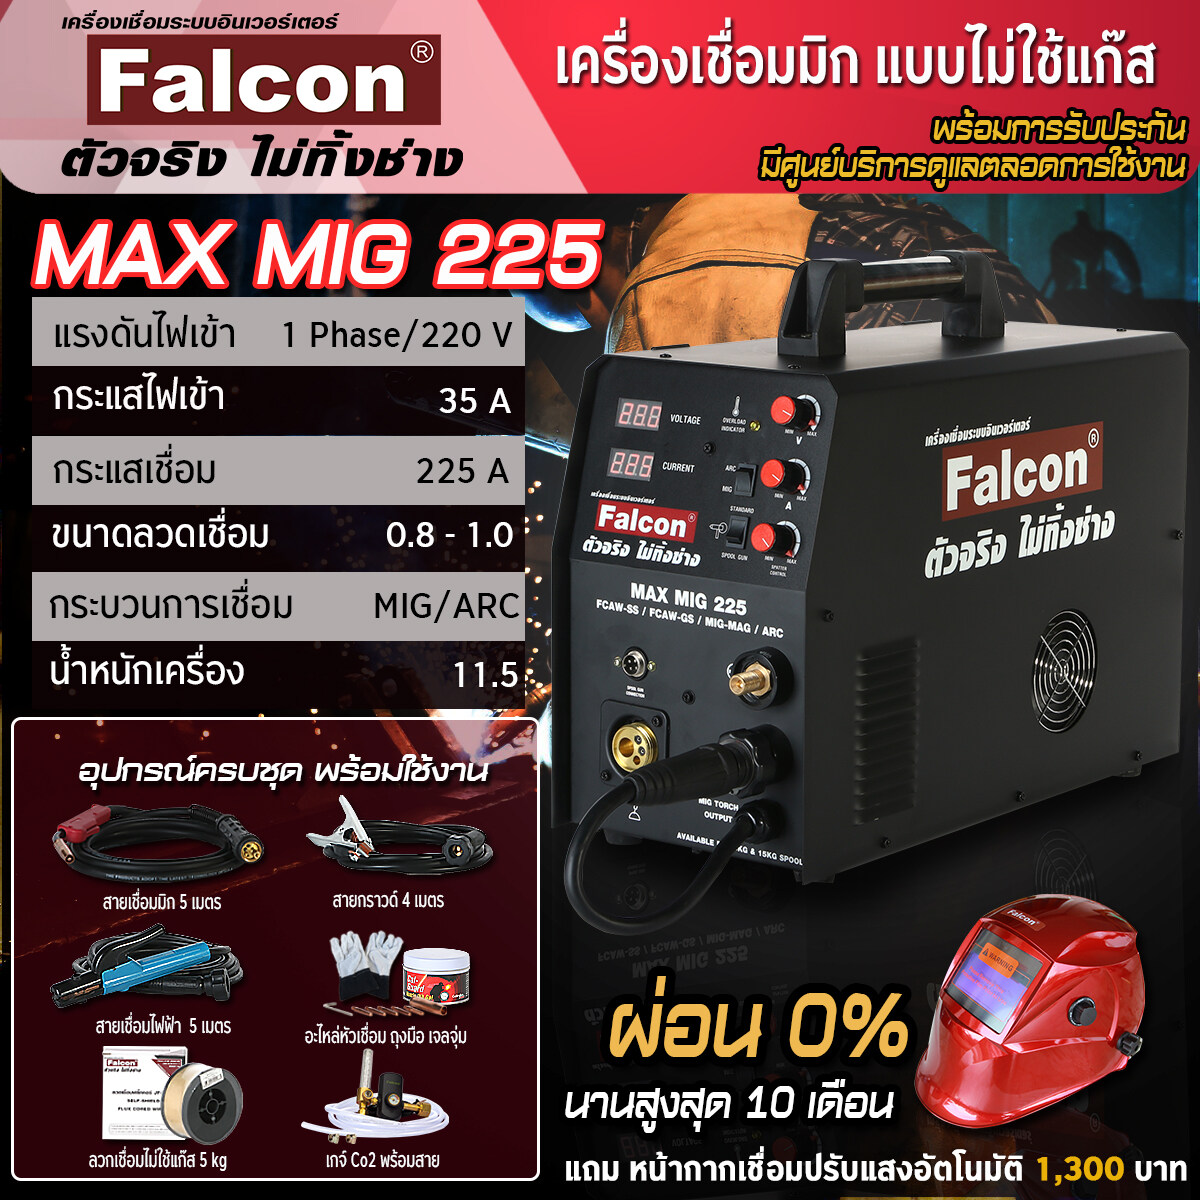 เครื่องเชื่อมFalcon MAX MIG 225 เครื่องเชื่อมซีโอทู เครื่องเชื่อมมิก  เครื่องเชื่อมแบบไม่ใช้แก๊ส ตู้เชื่อม อุปกรณ์งานเชื่อม